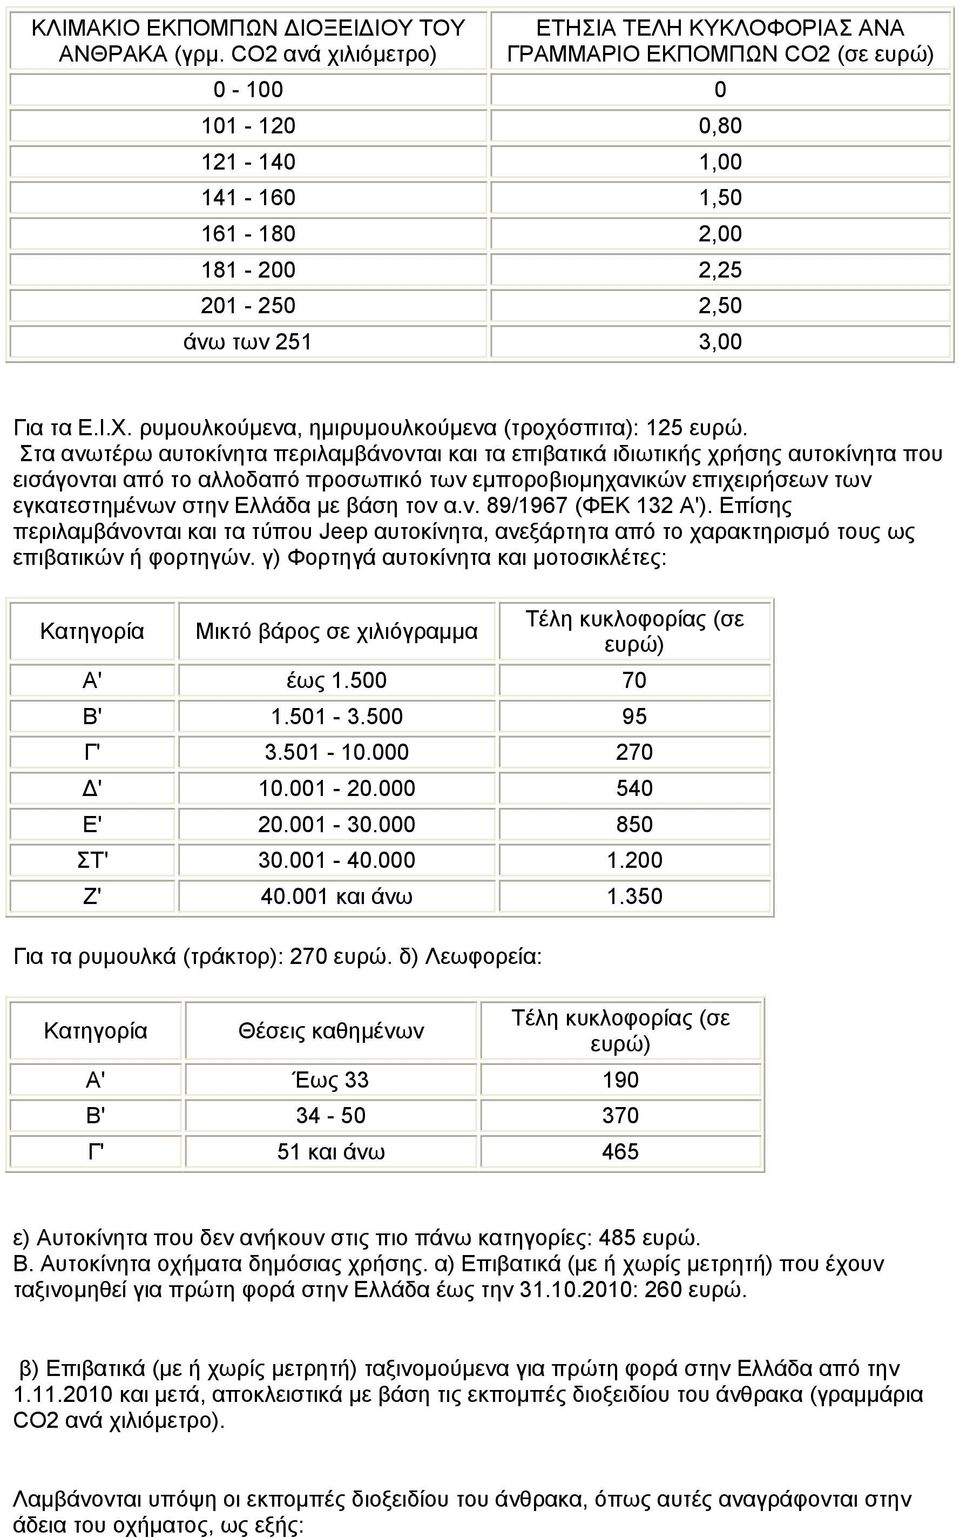 ρυμουλκούμενα, ημιρυμουλκούμενα (τροχόσπιτα): 125 ευρώ.